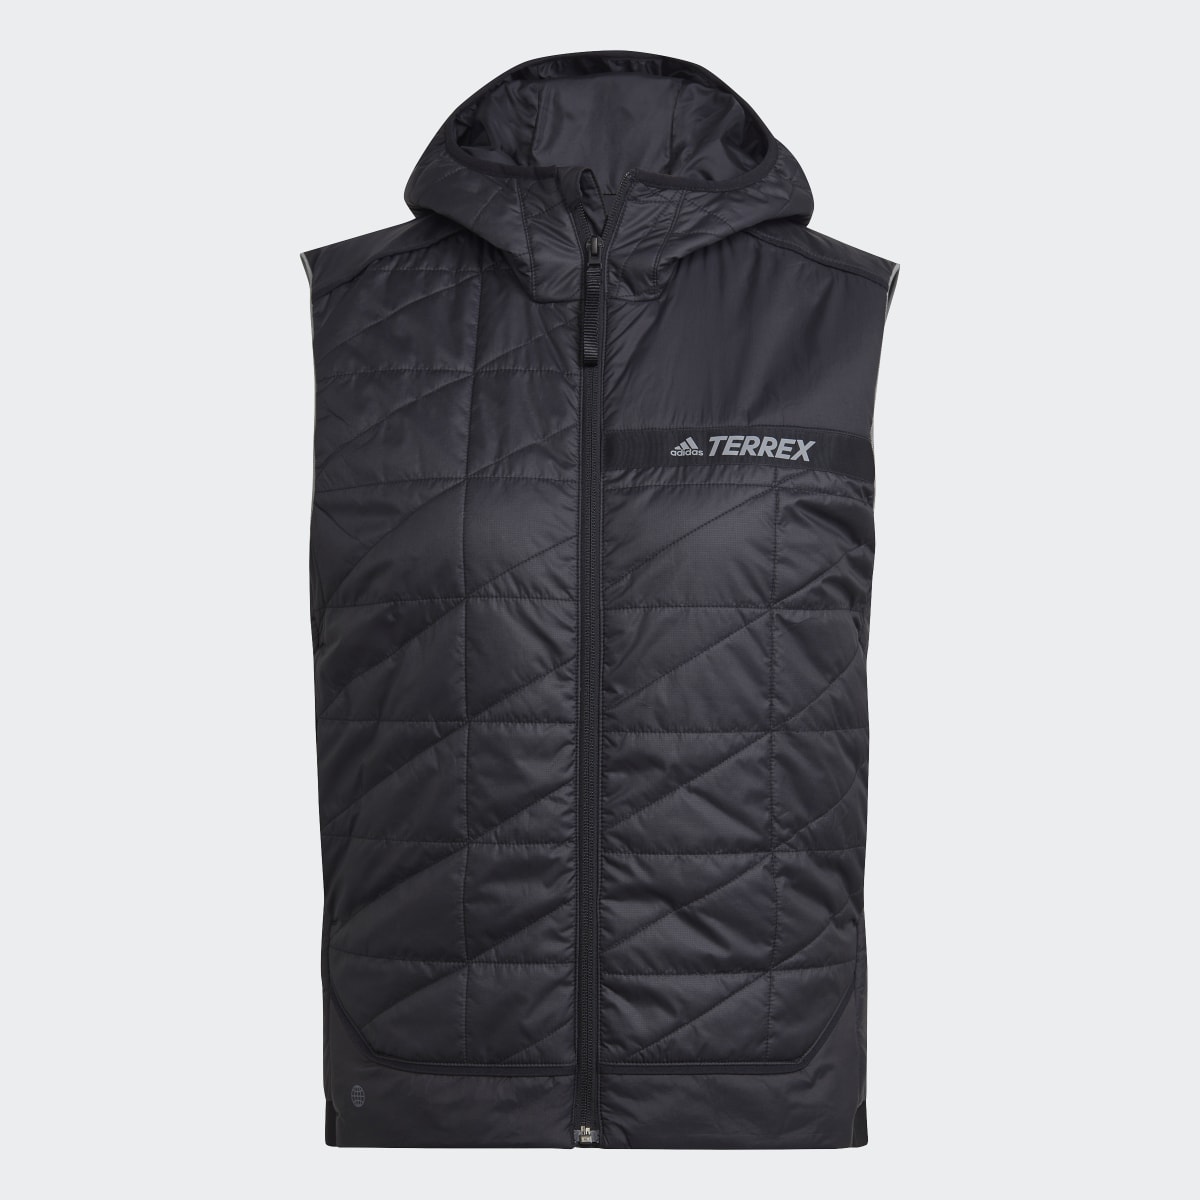 Adidas Terrex Multi Insulated Vest. 5